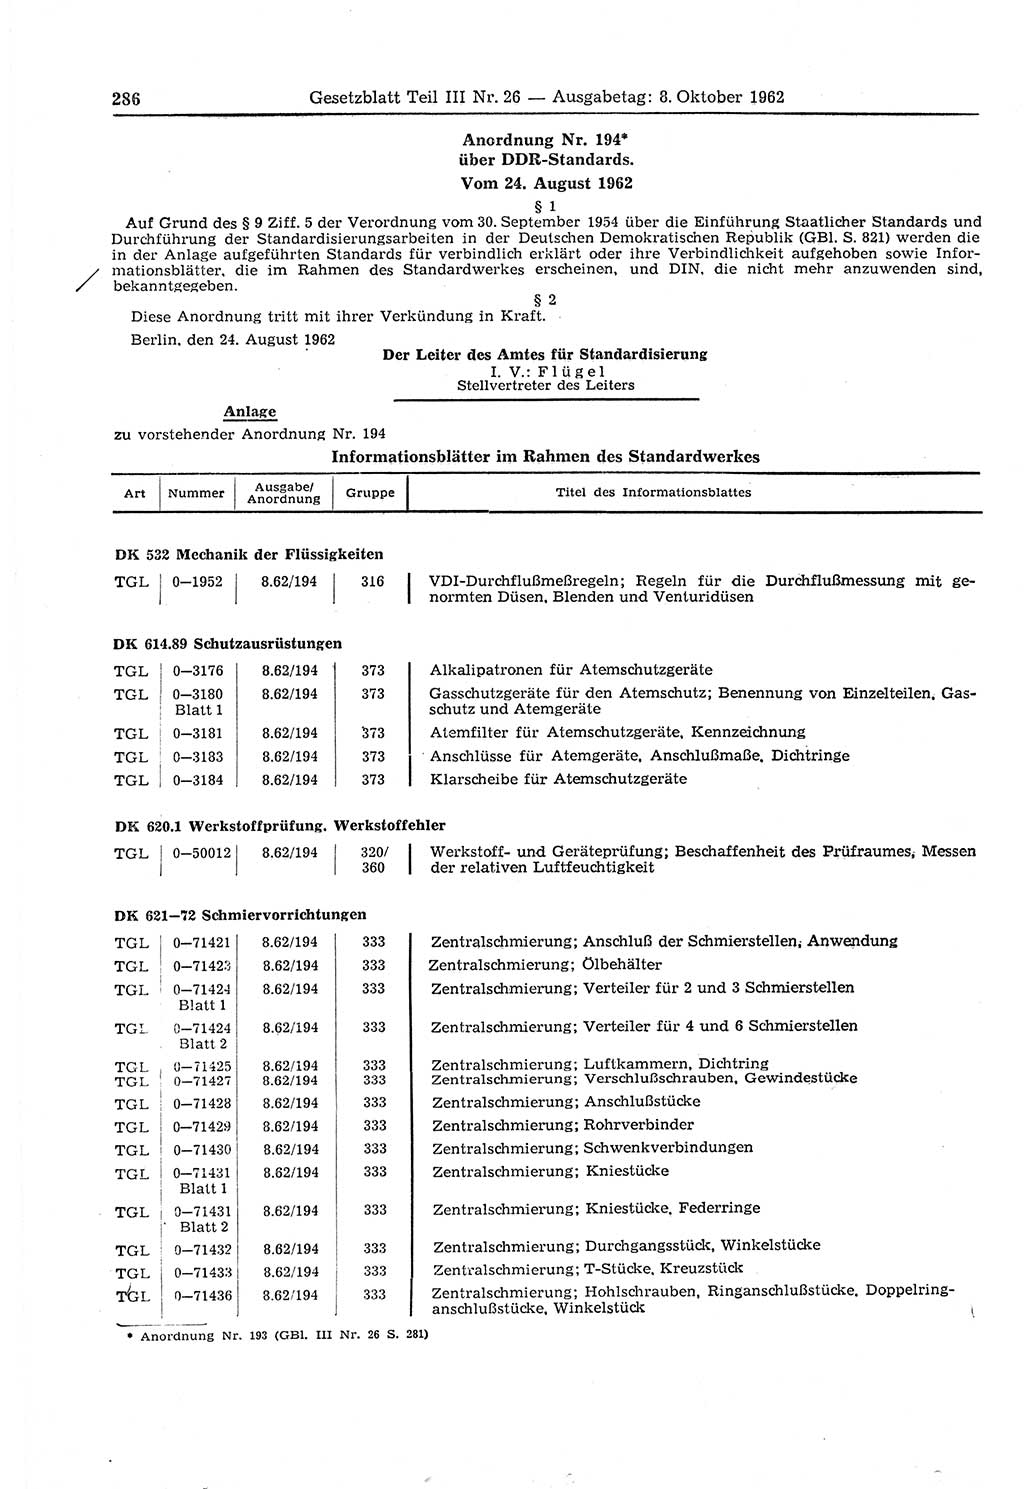 Gesetzblatt (GBl.) der Deutschen Demokratischen Republik (DDR) Teil ⅠⅠⅠ 1962, Seite 286 (GBl. DDR ⅠⅠⅠ 1962, S. 286)